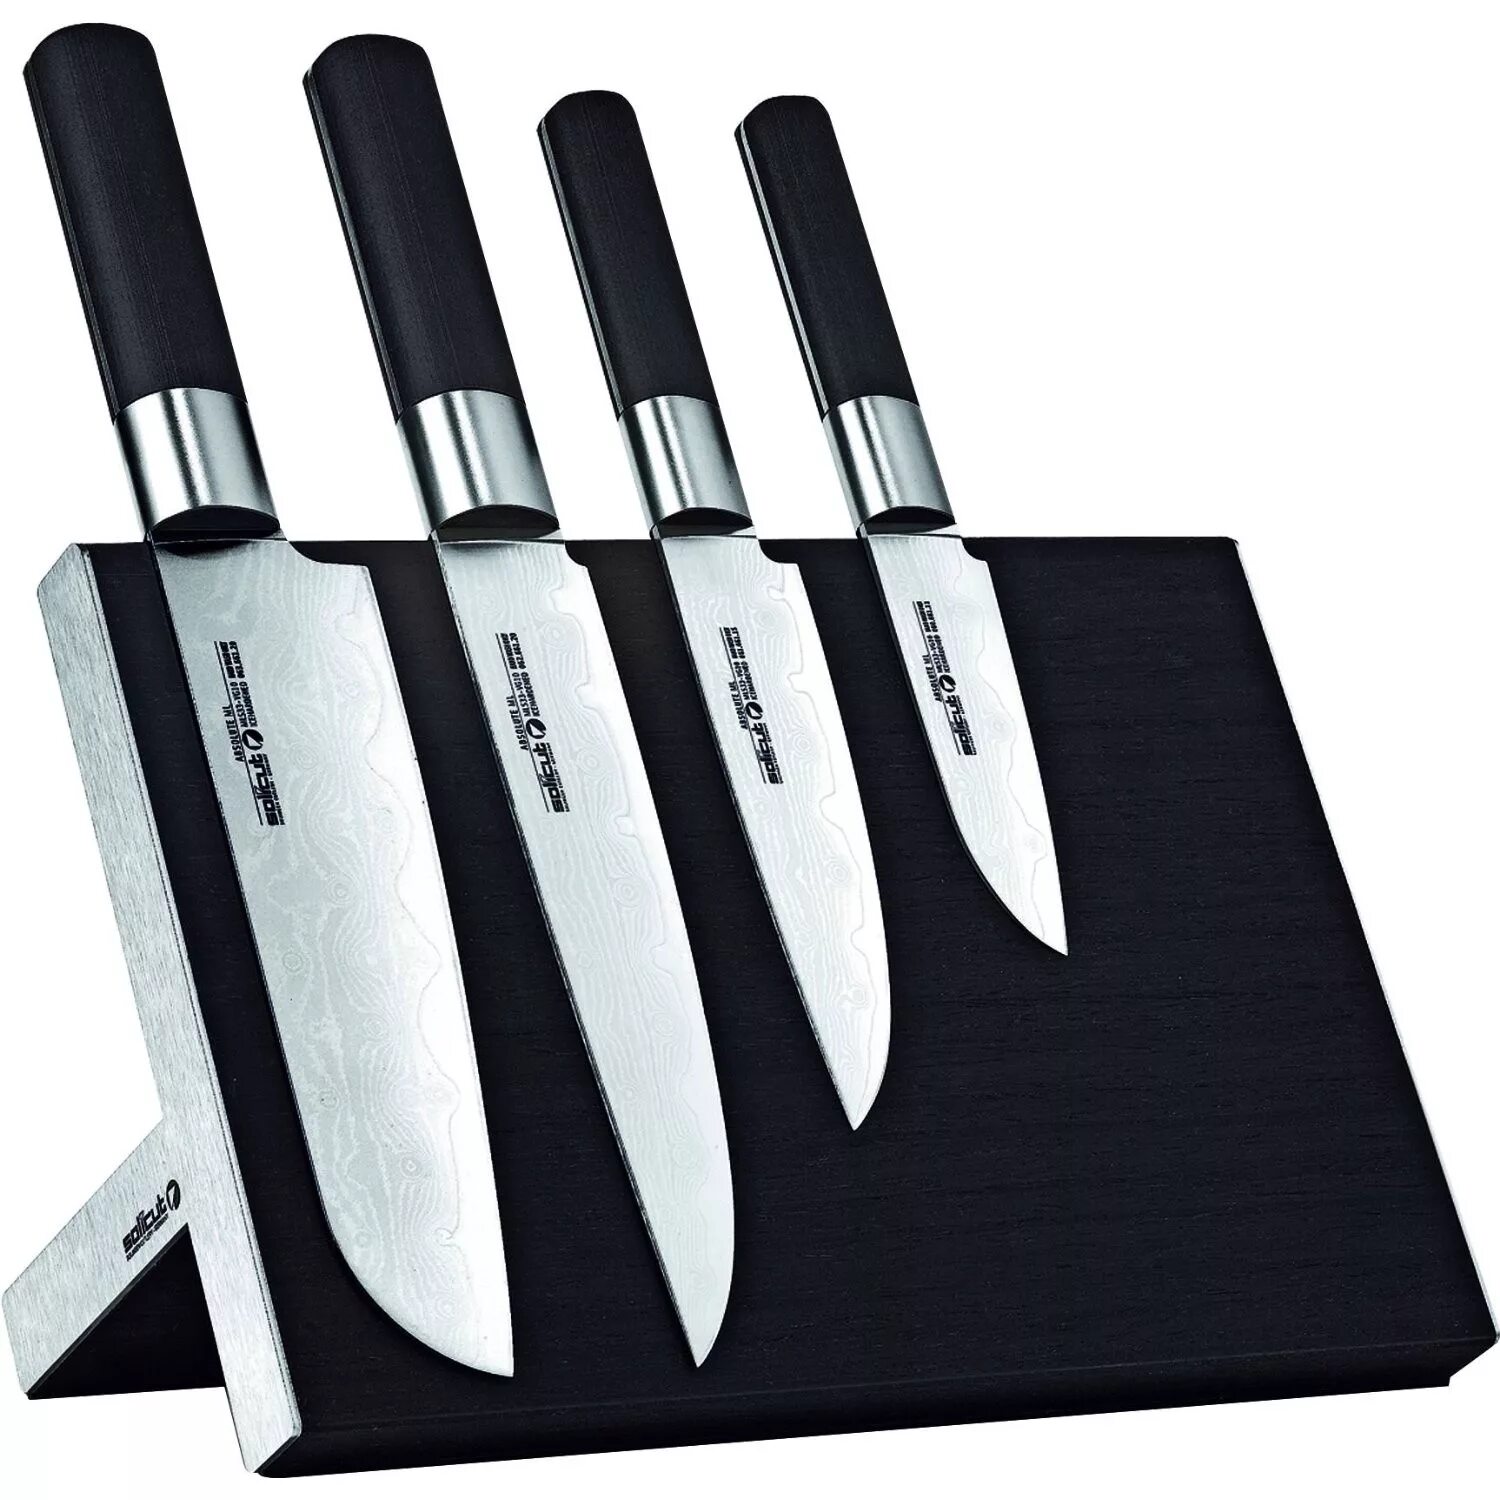 Хороший набор кухонных ножей. Кухонный нож. Набор ножей для кухни. Дизайнерские кухонные ножи. Нажми куханые.